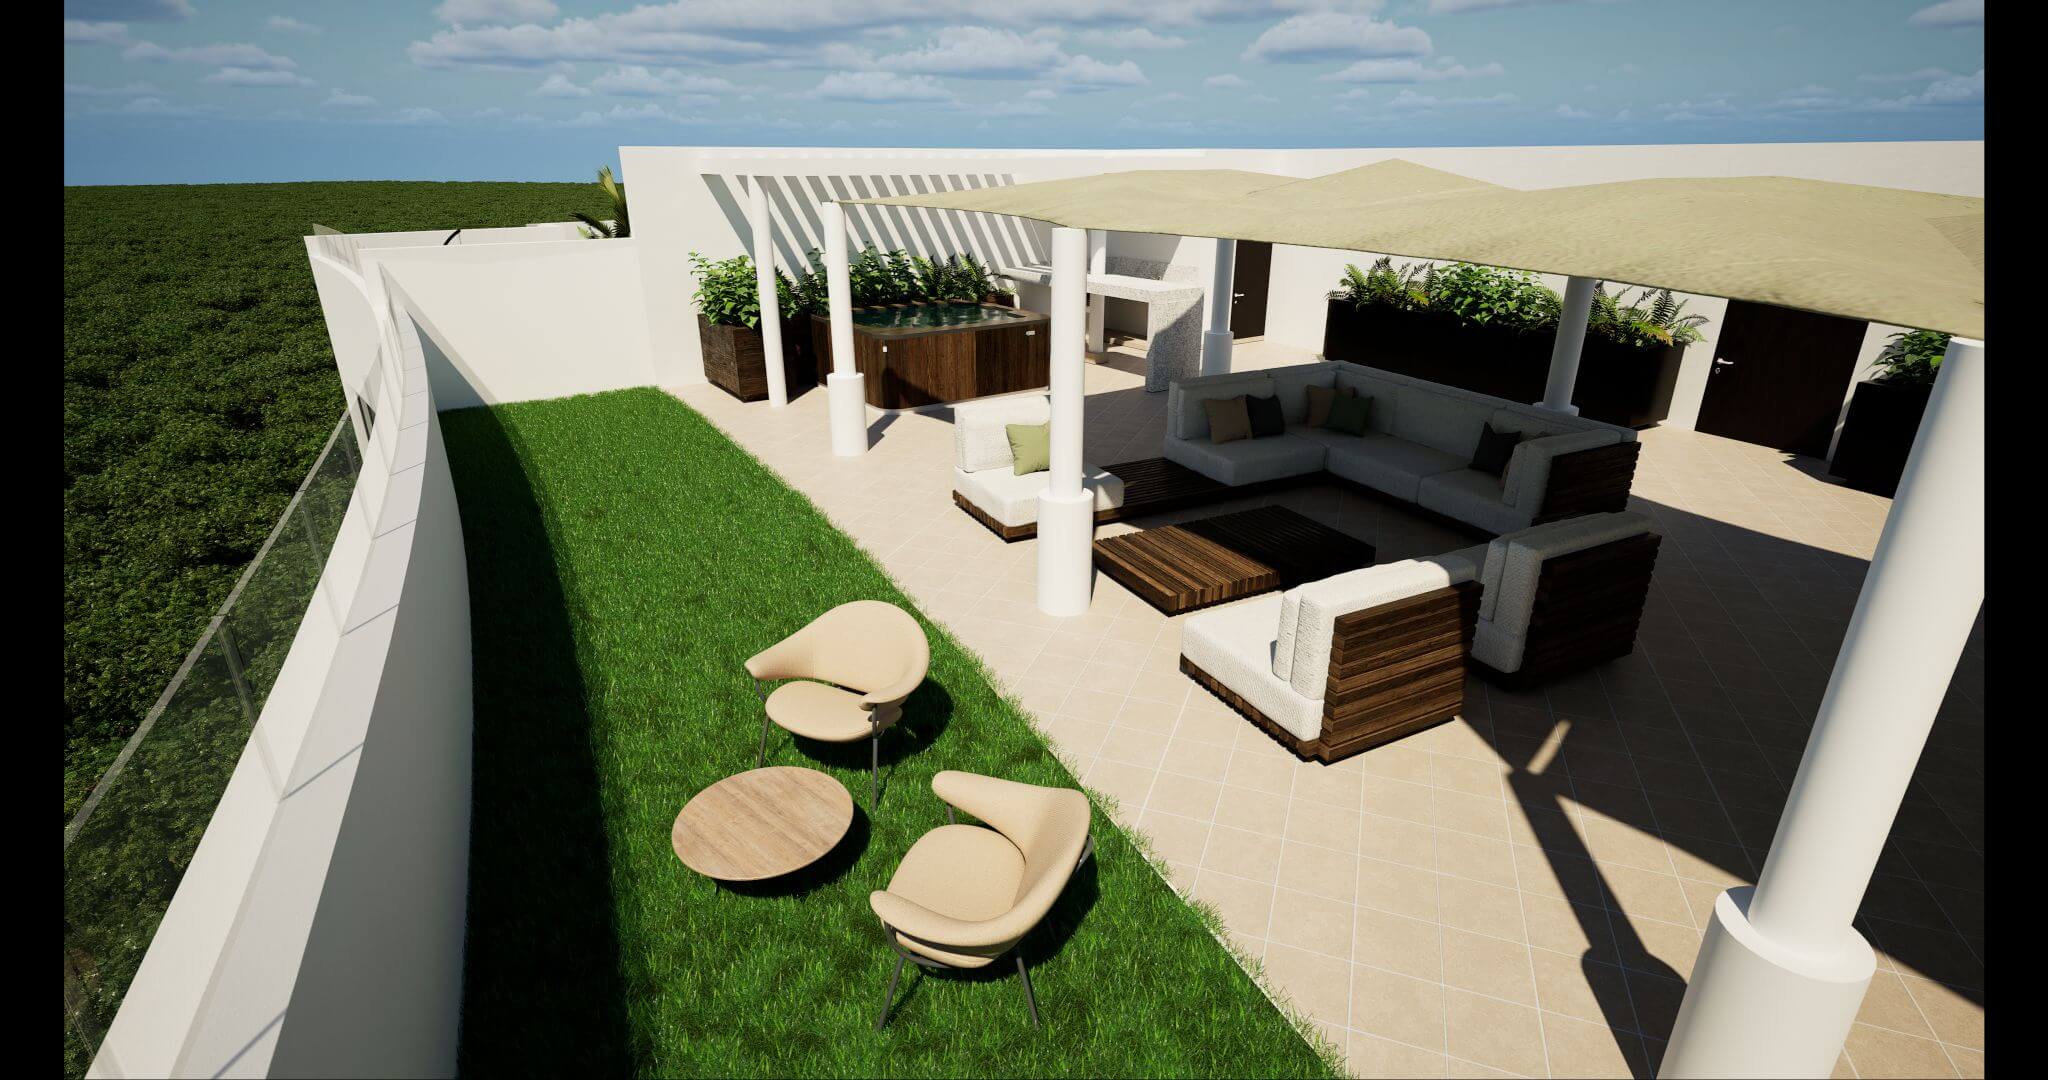 Condominio 2 recamaras + estudio, con club de playa, campo de golf, amenidades exclusivas, en venta, Corasol, Playa del Carmen, pre-construc